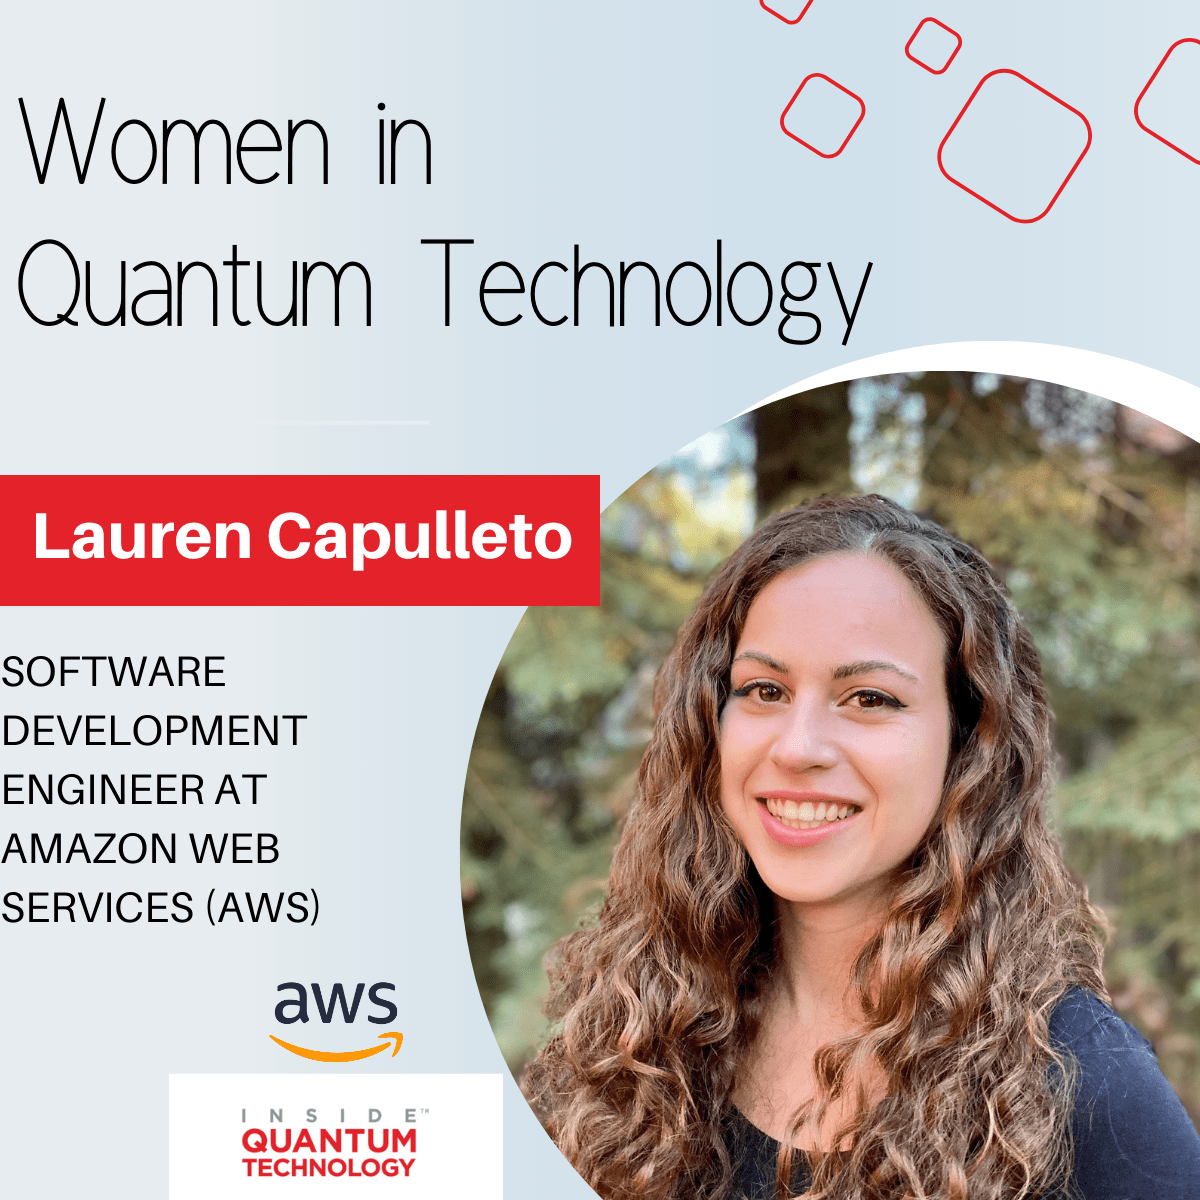 Η Lauren Capulleto, Μηχανικός Ανάπτυξης Λογισμικού στην Amazon Web Services (AWS) αφηγείται την ιστορία της για την είσοδο στην κβαντική βιομηχανία.